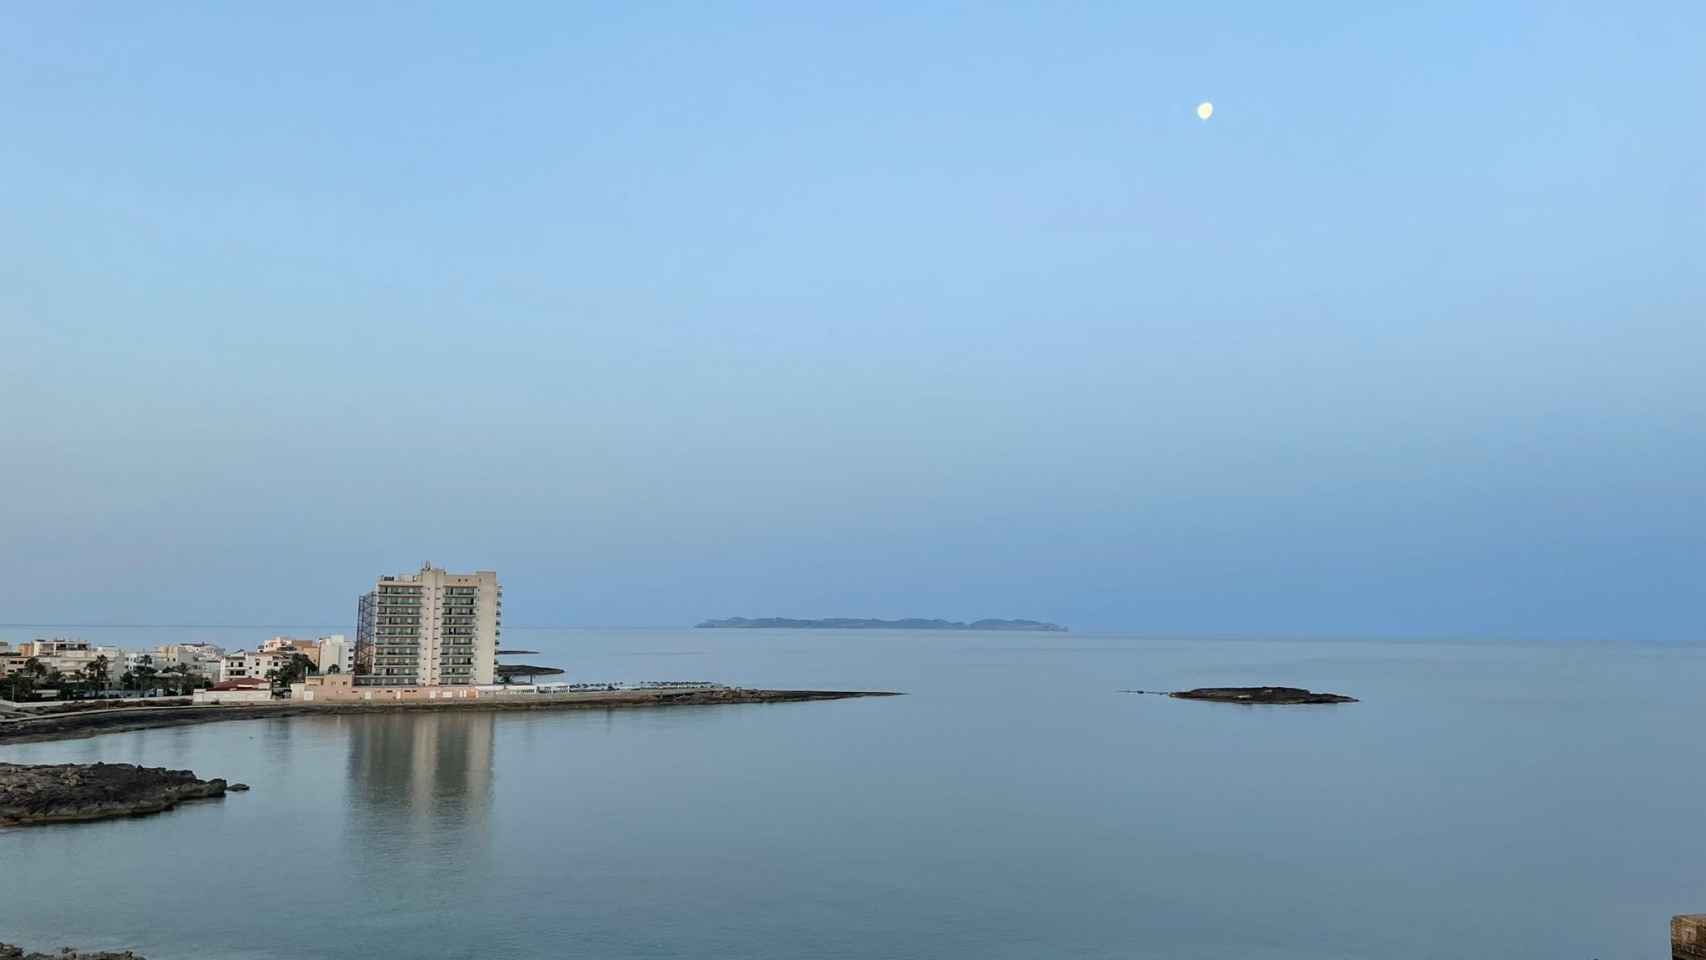 La isla de Cabrera (al fondo) al amanecer, desde la Colonia Sant Jordi.